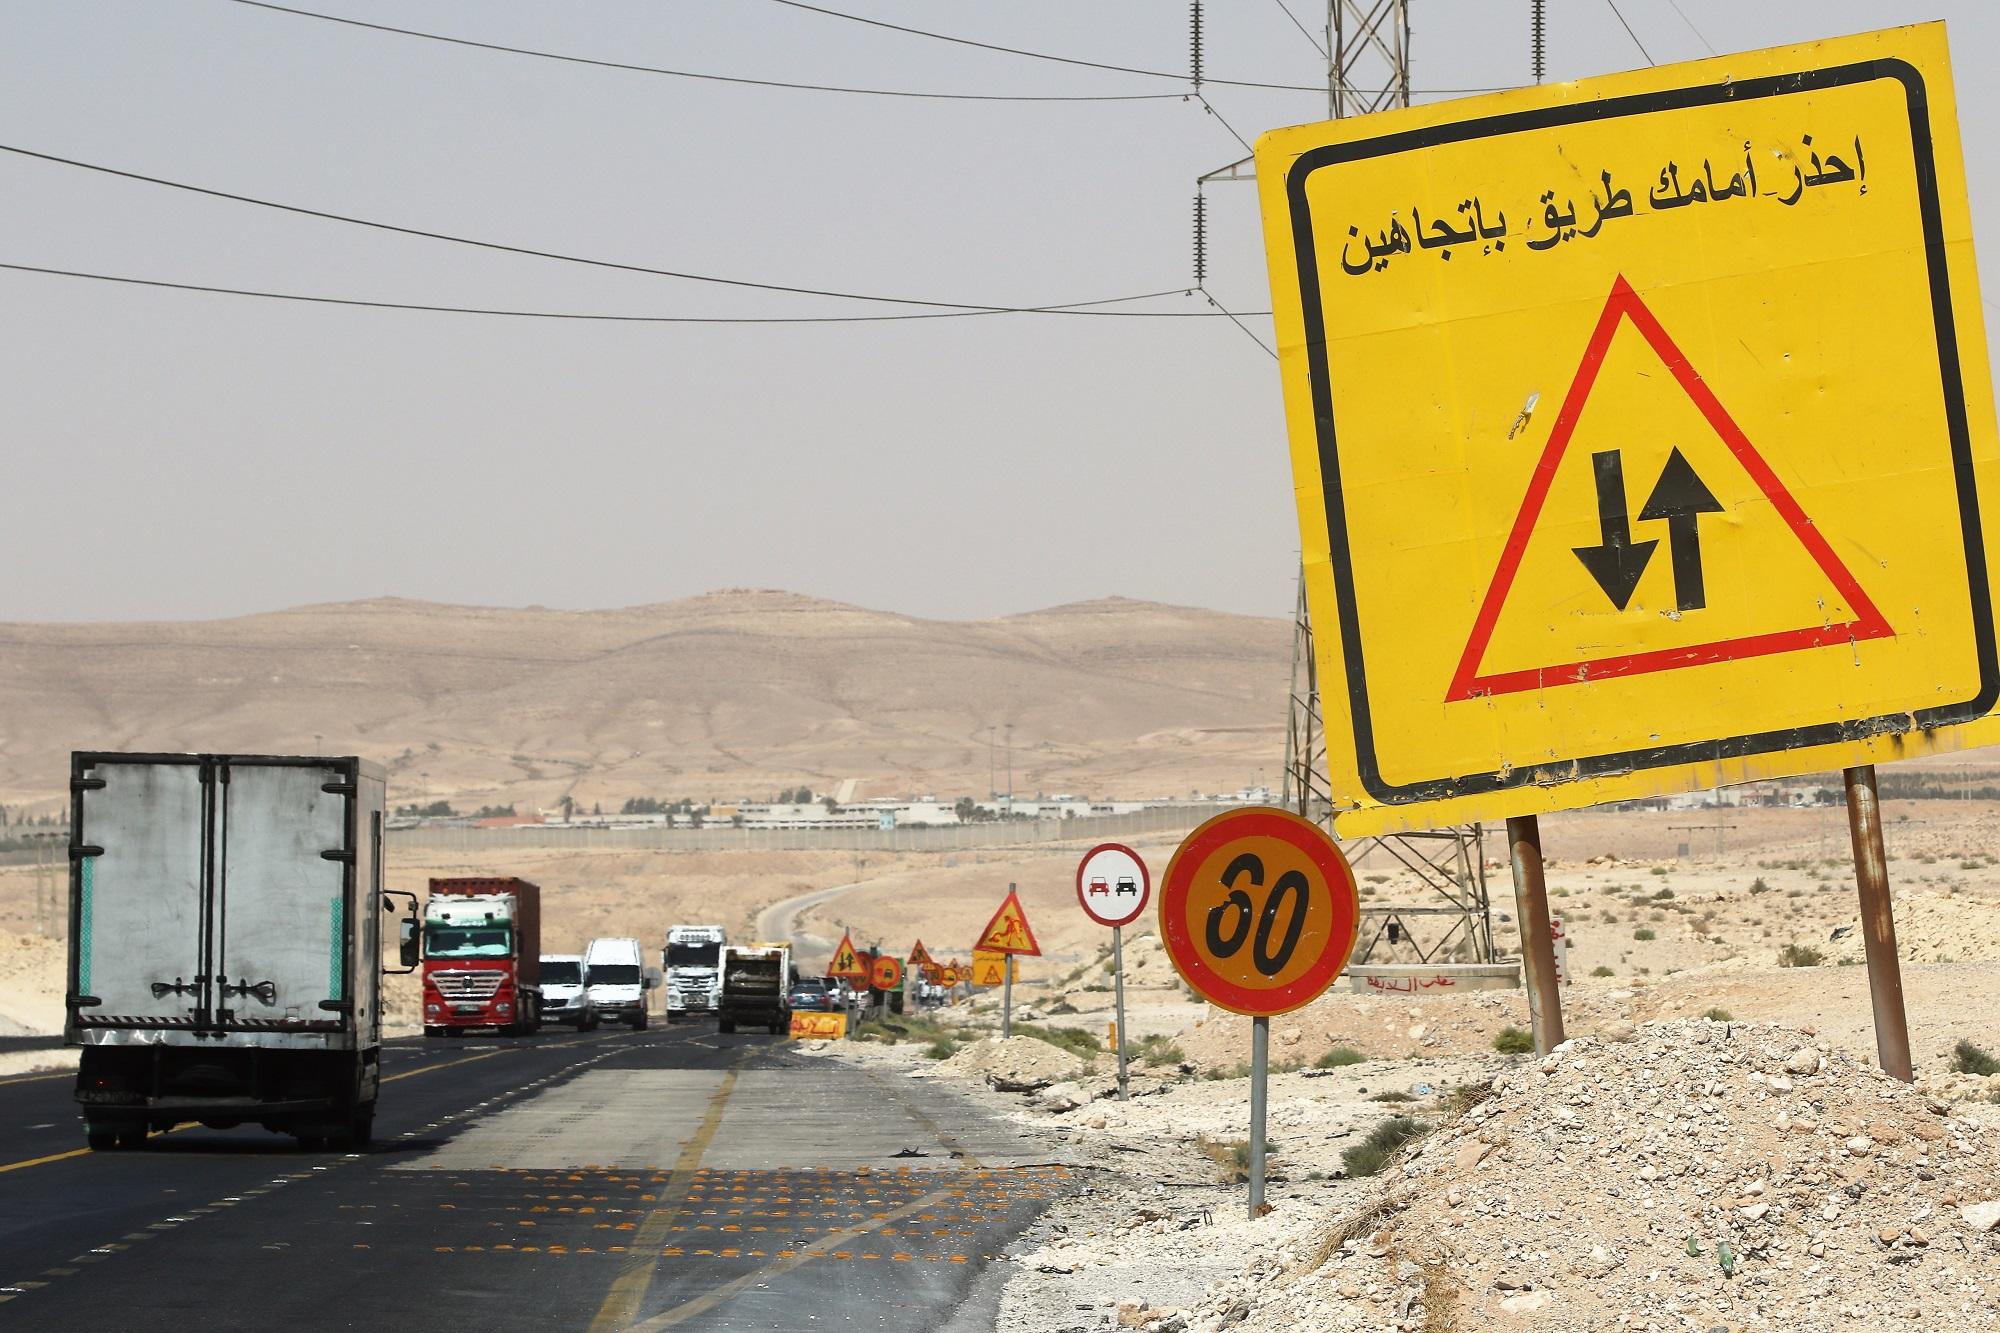 سجلات مديرية الدفاع المدني لا تخلو يوميا من الحوادث المرورية على الطريق الصحراوي، معظمها نتيجة السرعة العالية أو التجاوز الخاطئ. (صلاح ملكاوي/المملكة) 